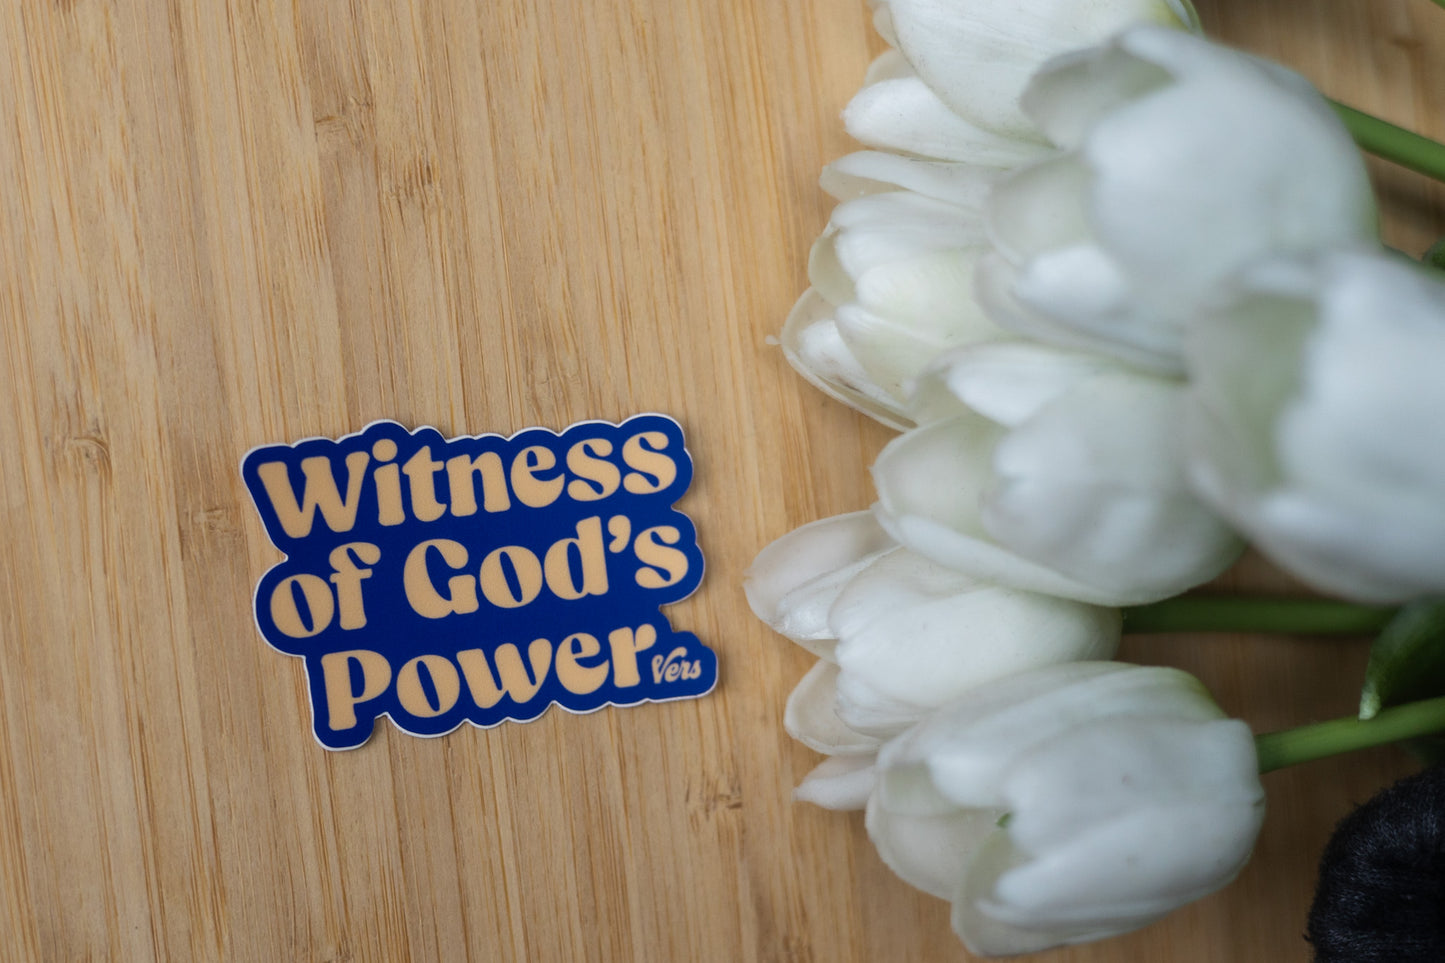 Witness Of God's Power Sticker